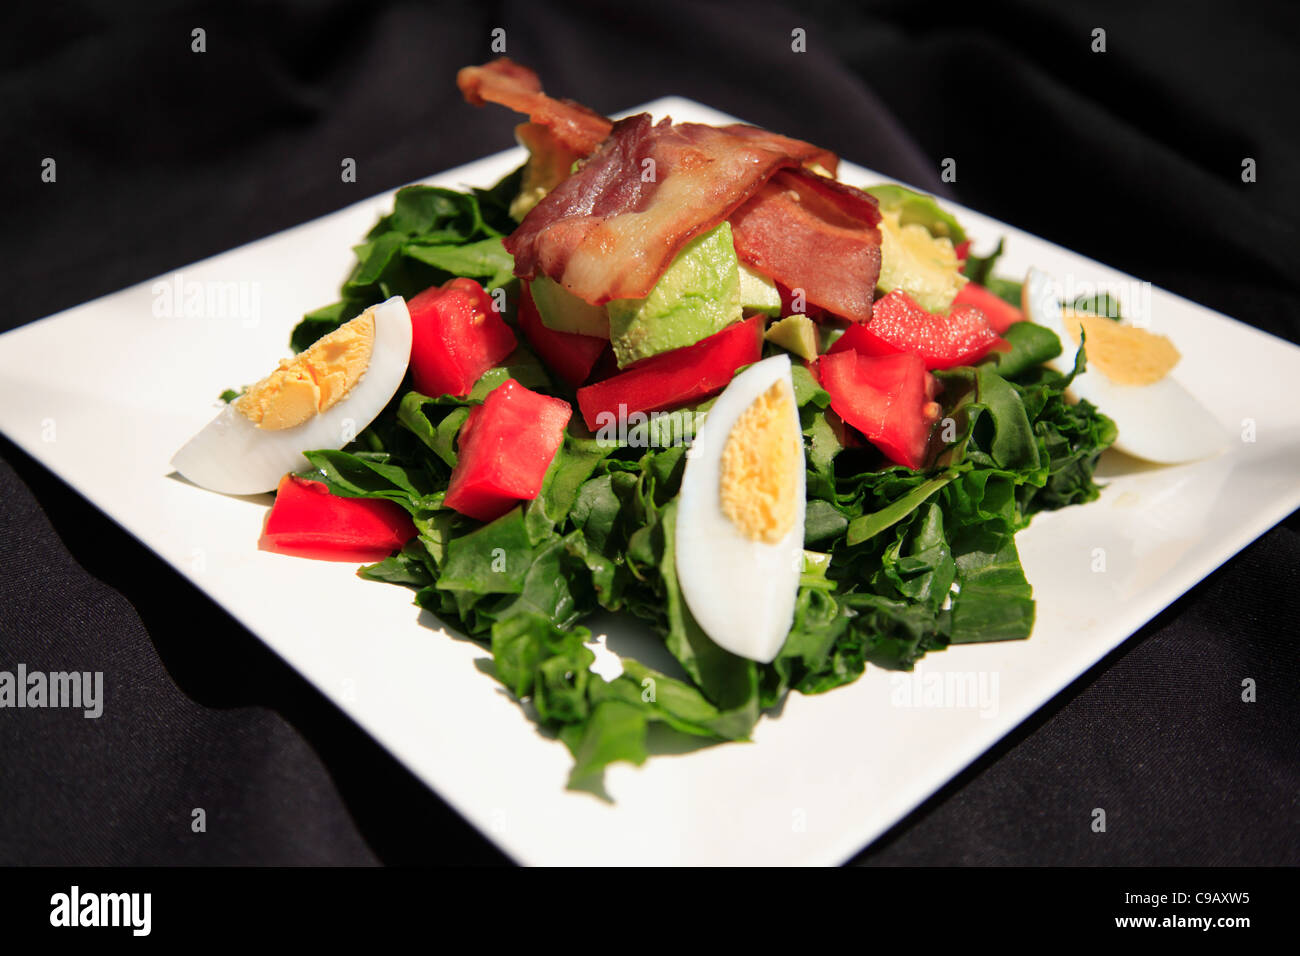 Salade d'épinards et bacon d'été sur une plaque blanche, tourné avec une faible profondeur de champ Banque D'Images